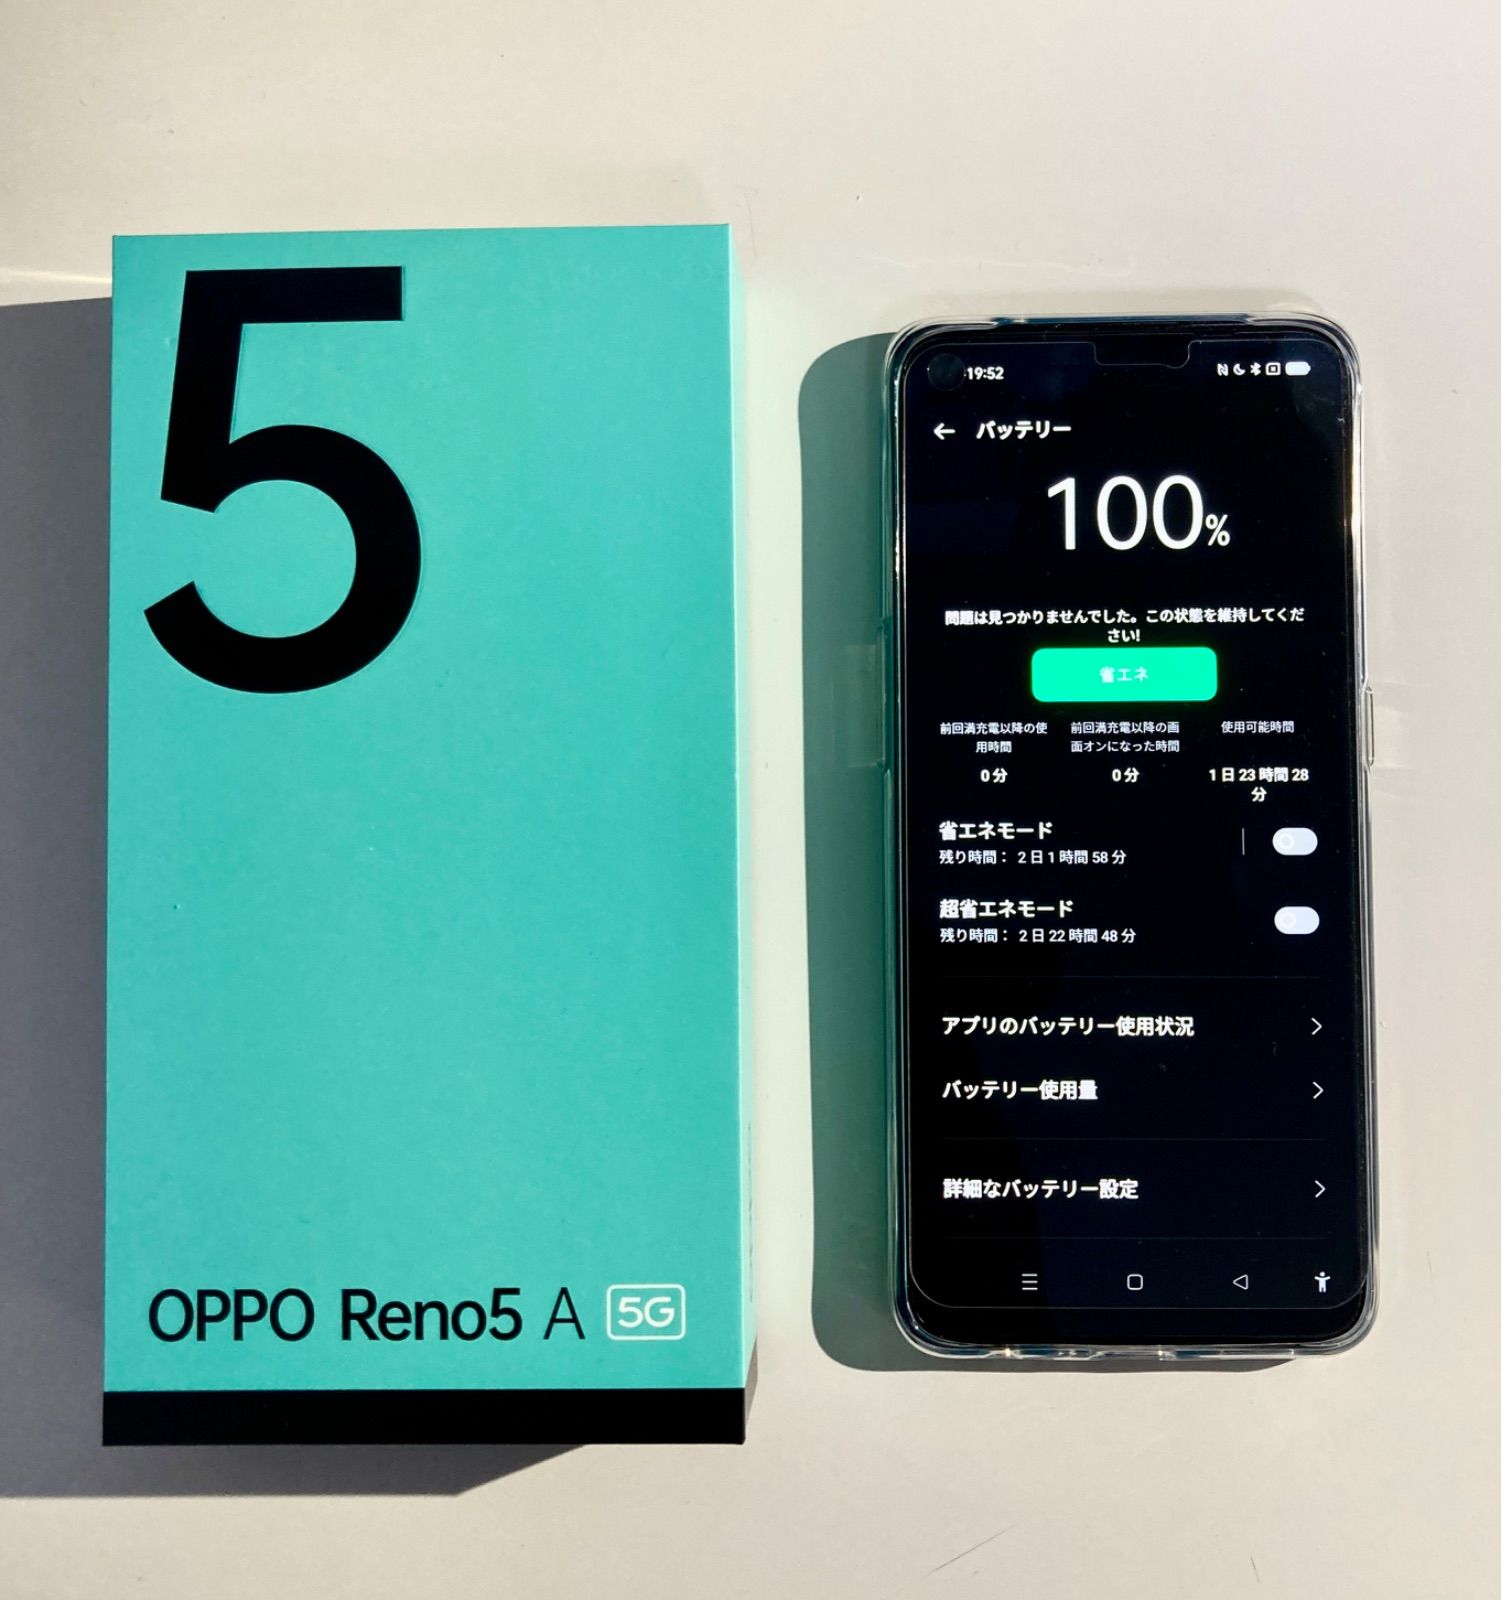 【新品未開封】OPPO Reno5A 5G 128GB シルバーブラック